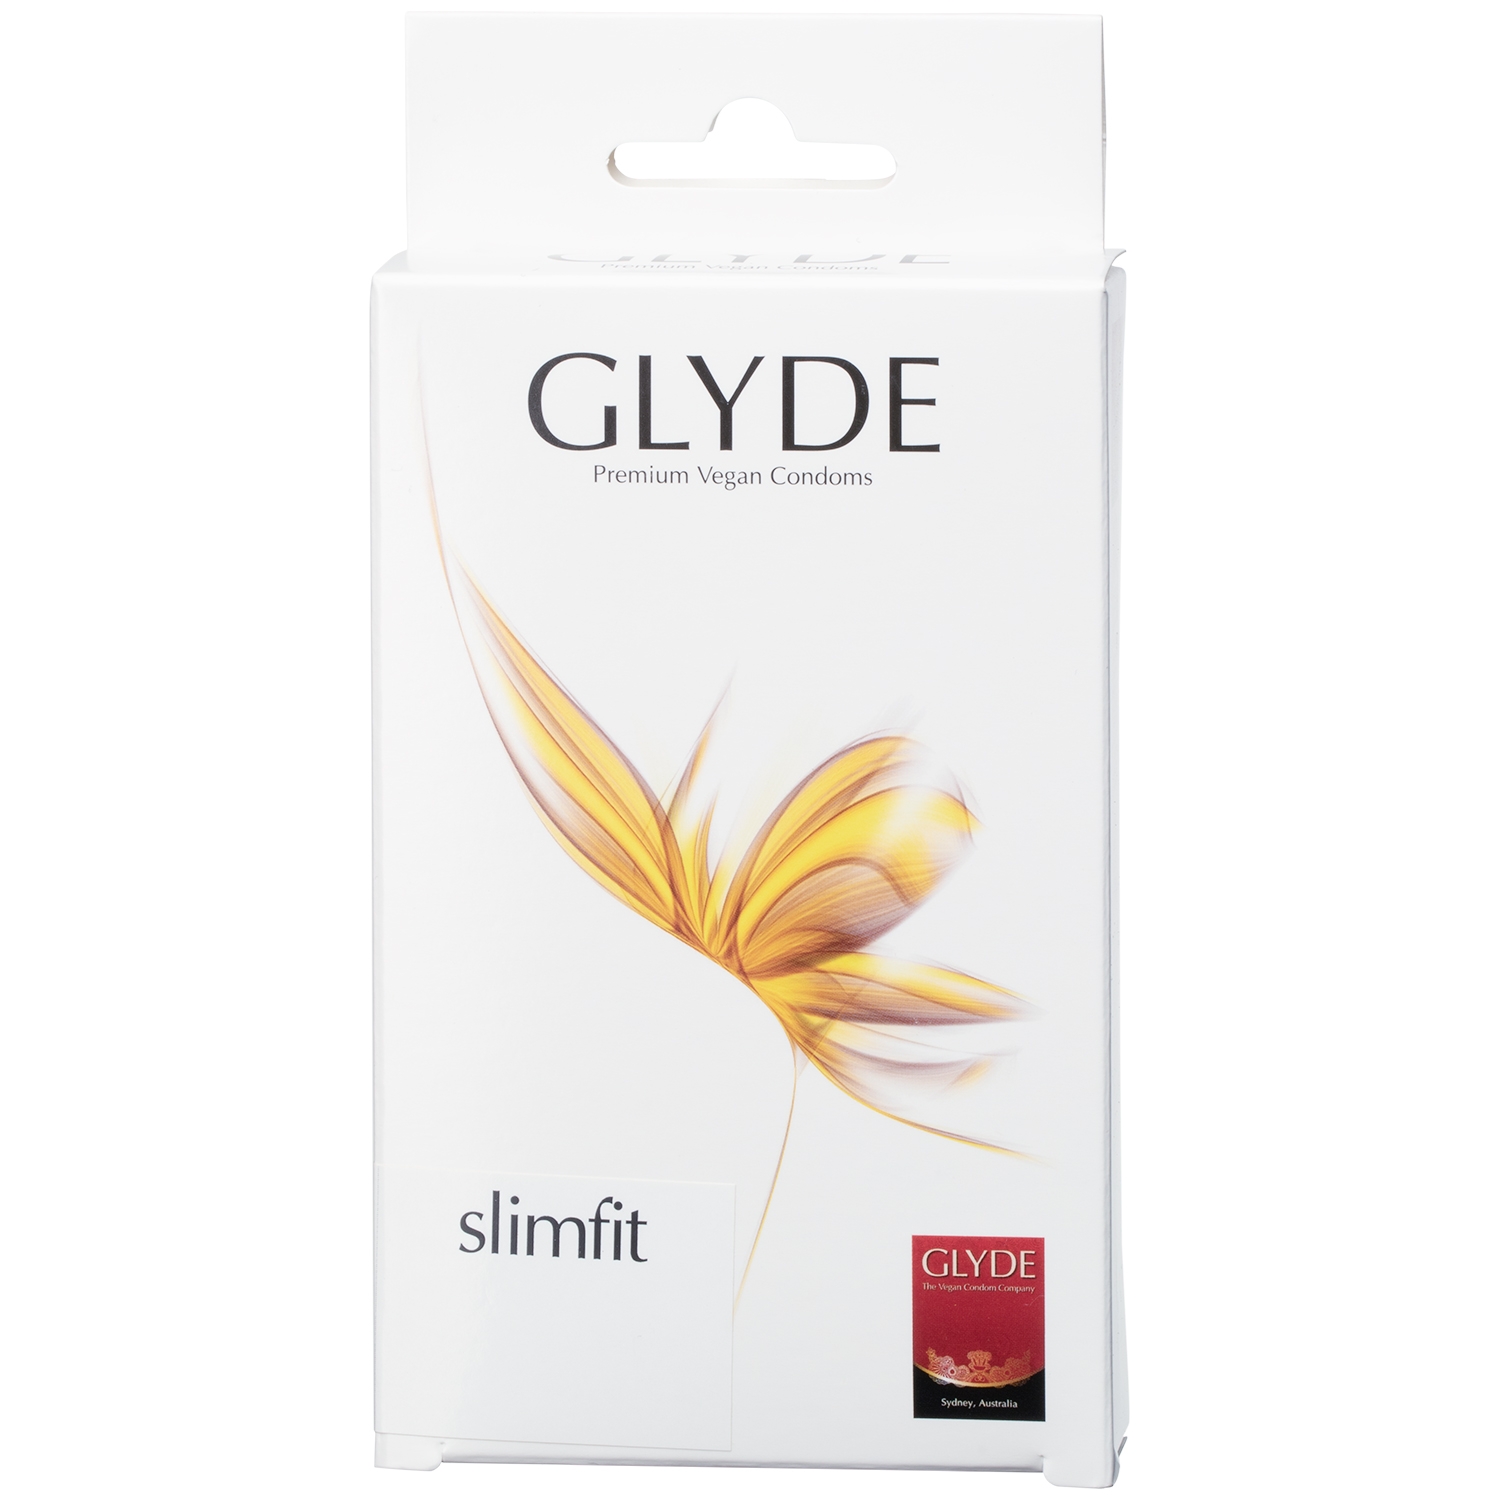 Glyde Slimfit Veganske Kondomer 10 stk - Klar thumbnail